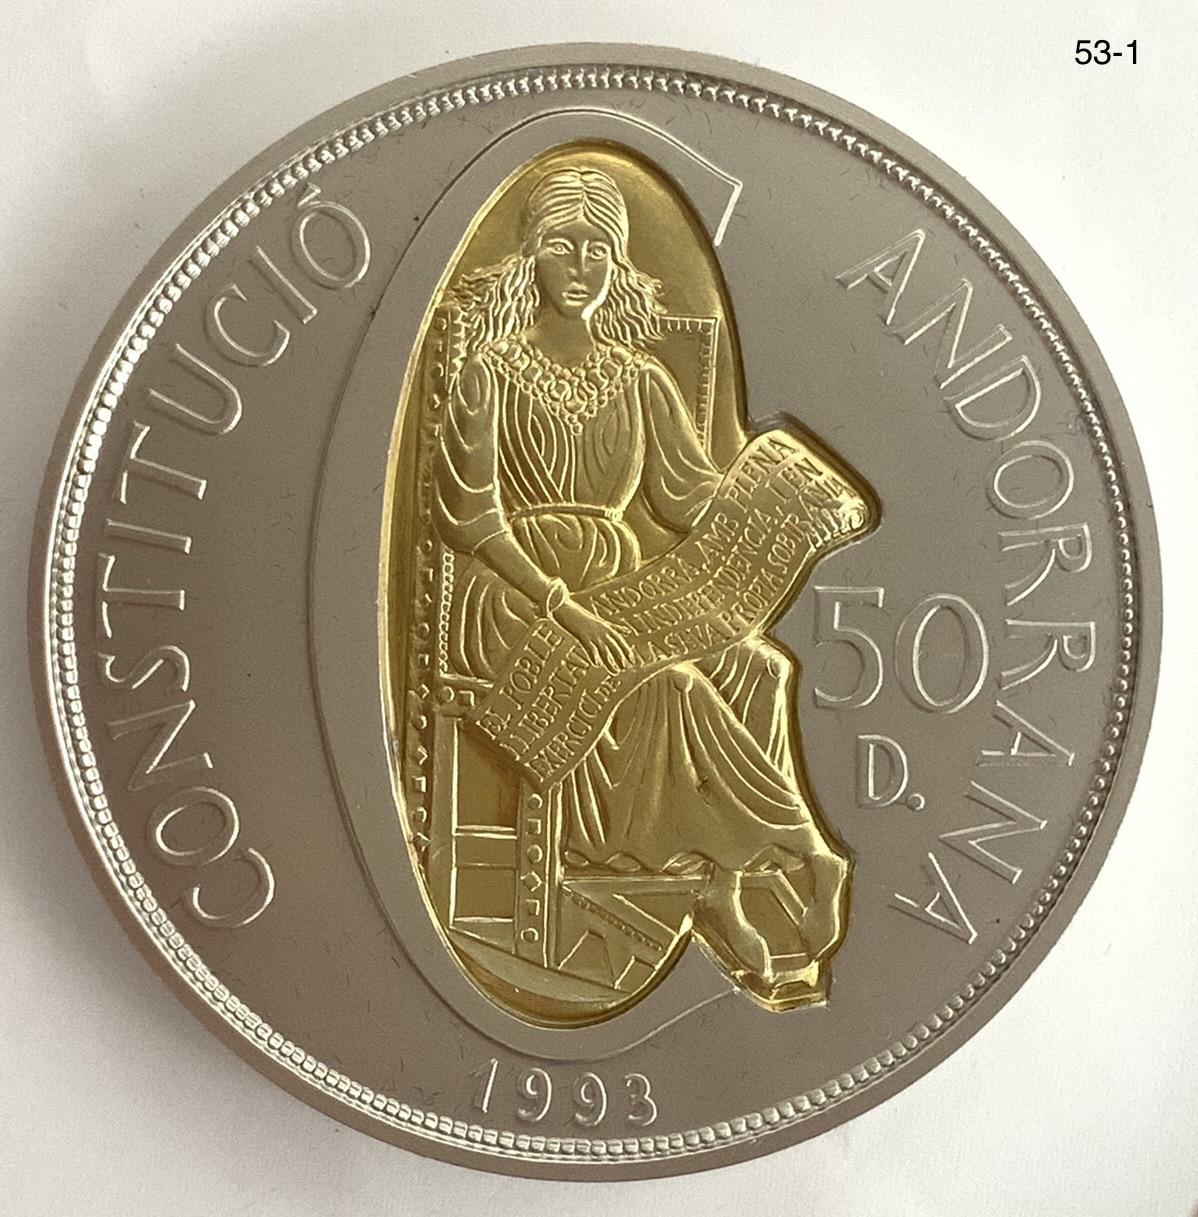 アンドラ-Andorra. 未使用. 新憲法制定 50ディナール金・銀2色貨 1993 ...